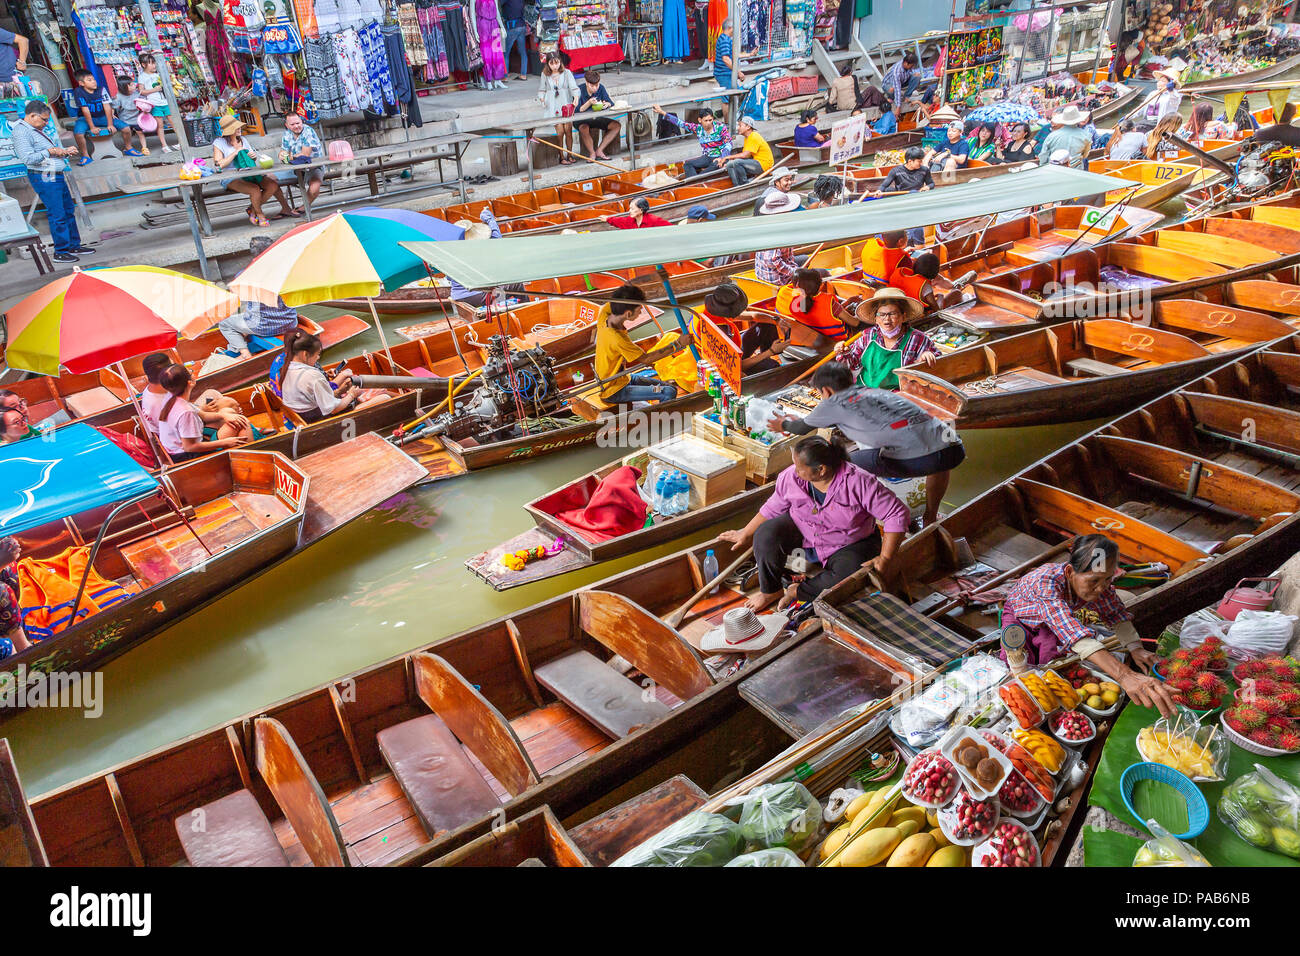 Marché flottant avec fruits, légumes et différents articles vendus dans de petites embarcations, dans Damnoen Saduak, Thaïlande Banque D'Images